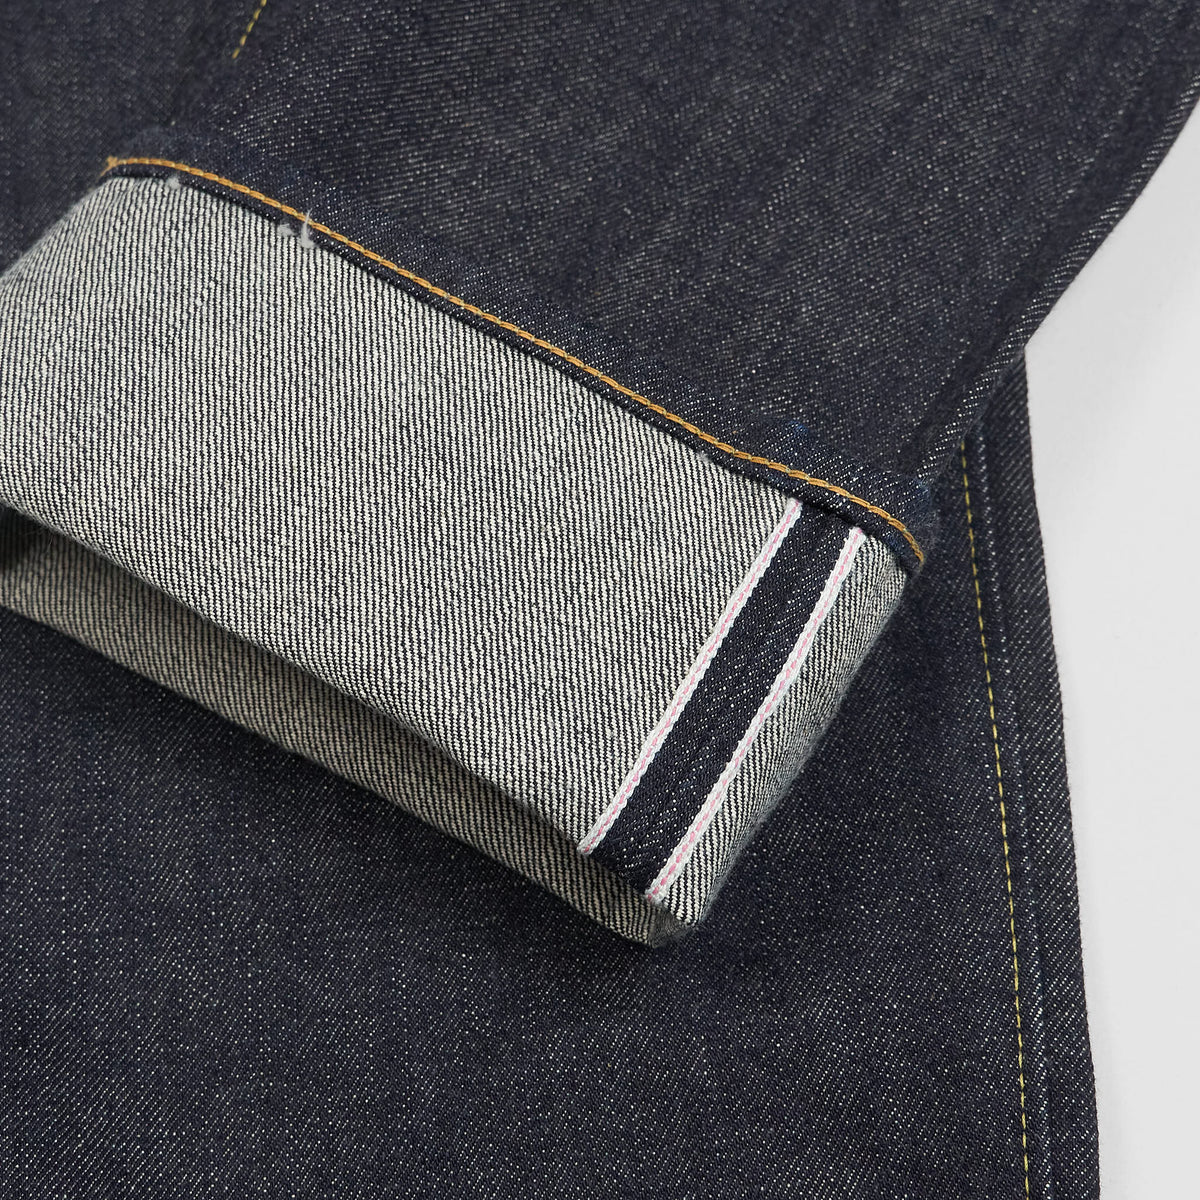 Sugar Cane Slim Tapered Model 2021 14,25 oz. Five Pocket Denim Jeans